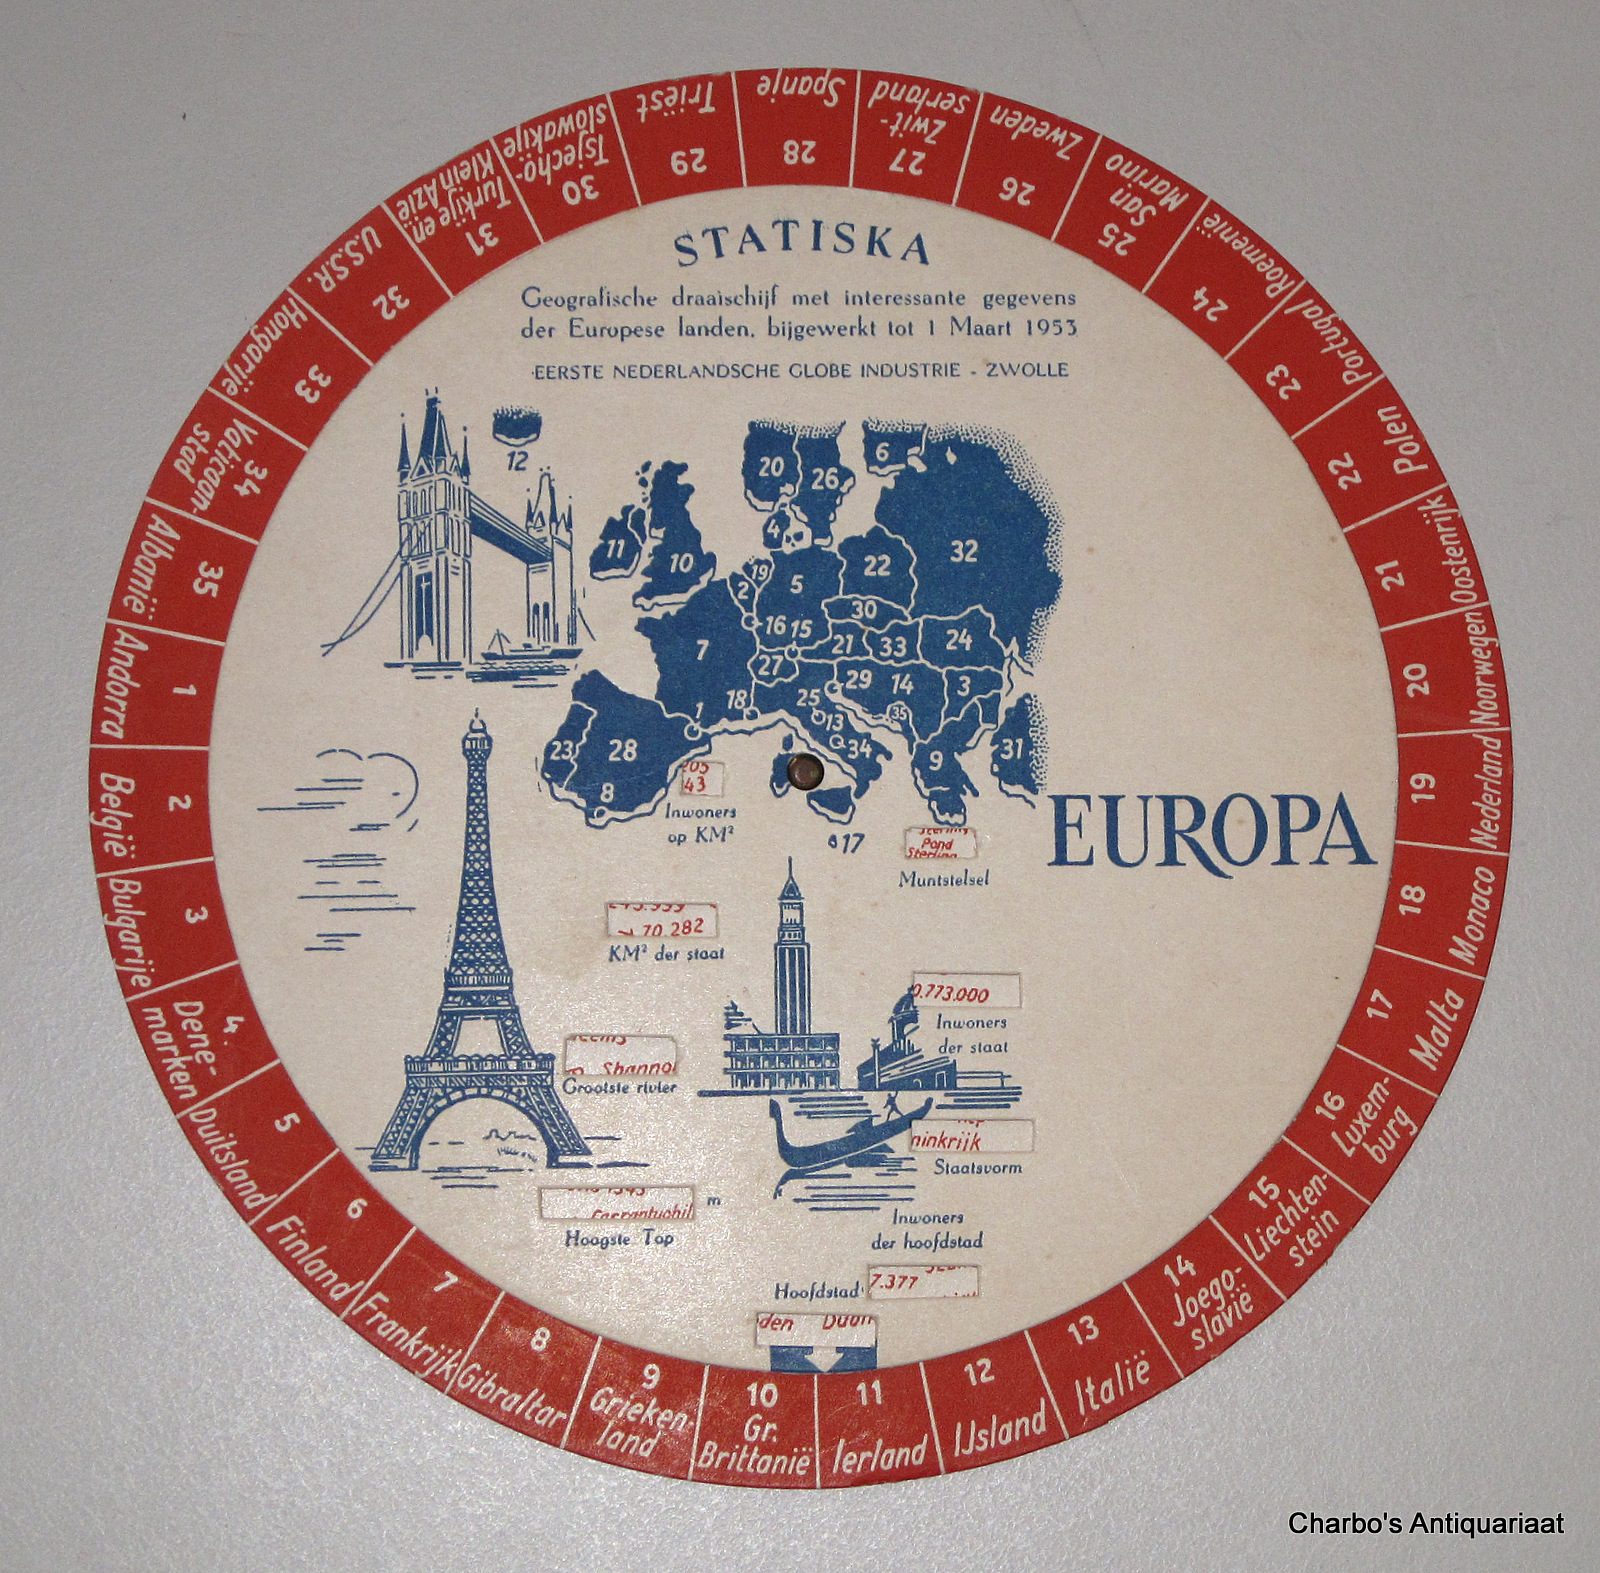 ANON., -  Statiska. Geografische draaischijf met interessante gegevens der Europese landen, bijgewerkt tot 1 Maart 1953.